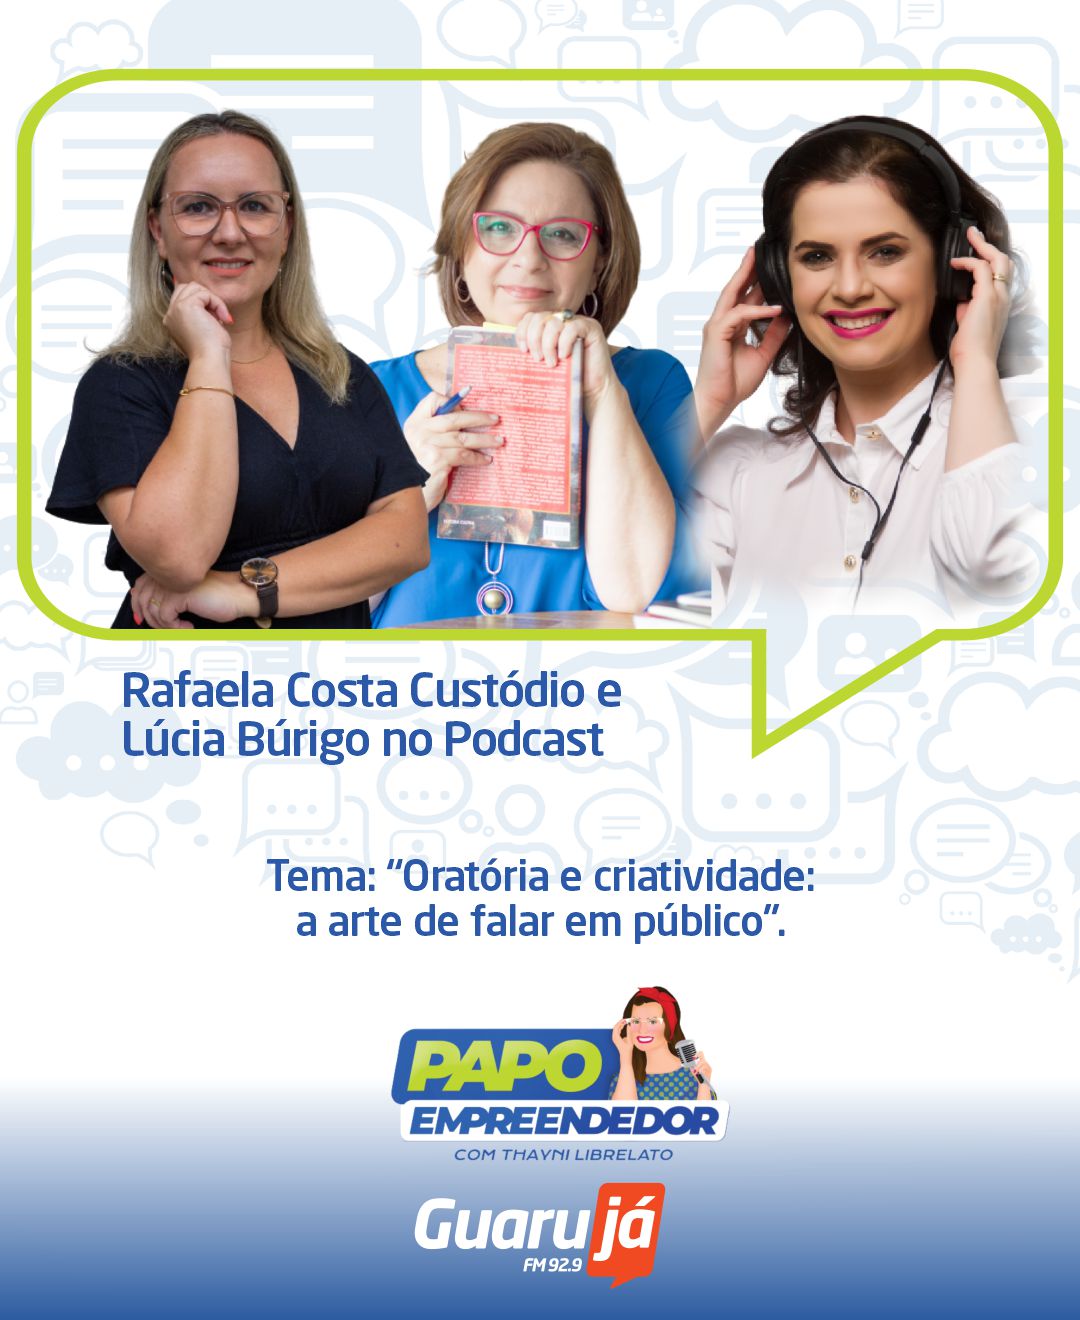 Papo Empreendedor ep.: 123 – Thayni Librelato conversa com Lúcia Búrigo e Rafaela Costa Custódio sobre “Oratória e criatividade: a arte de falar em público.”